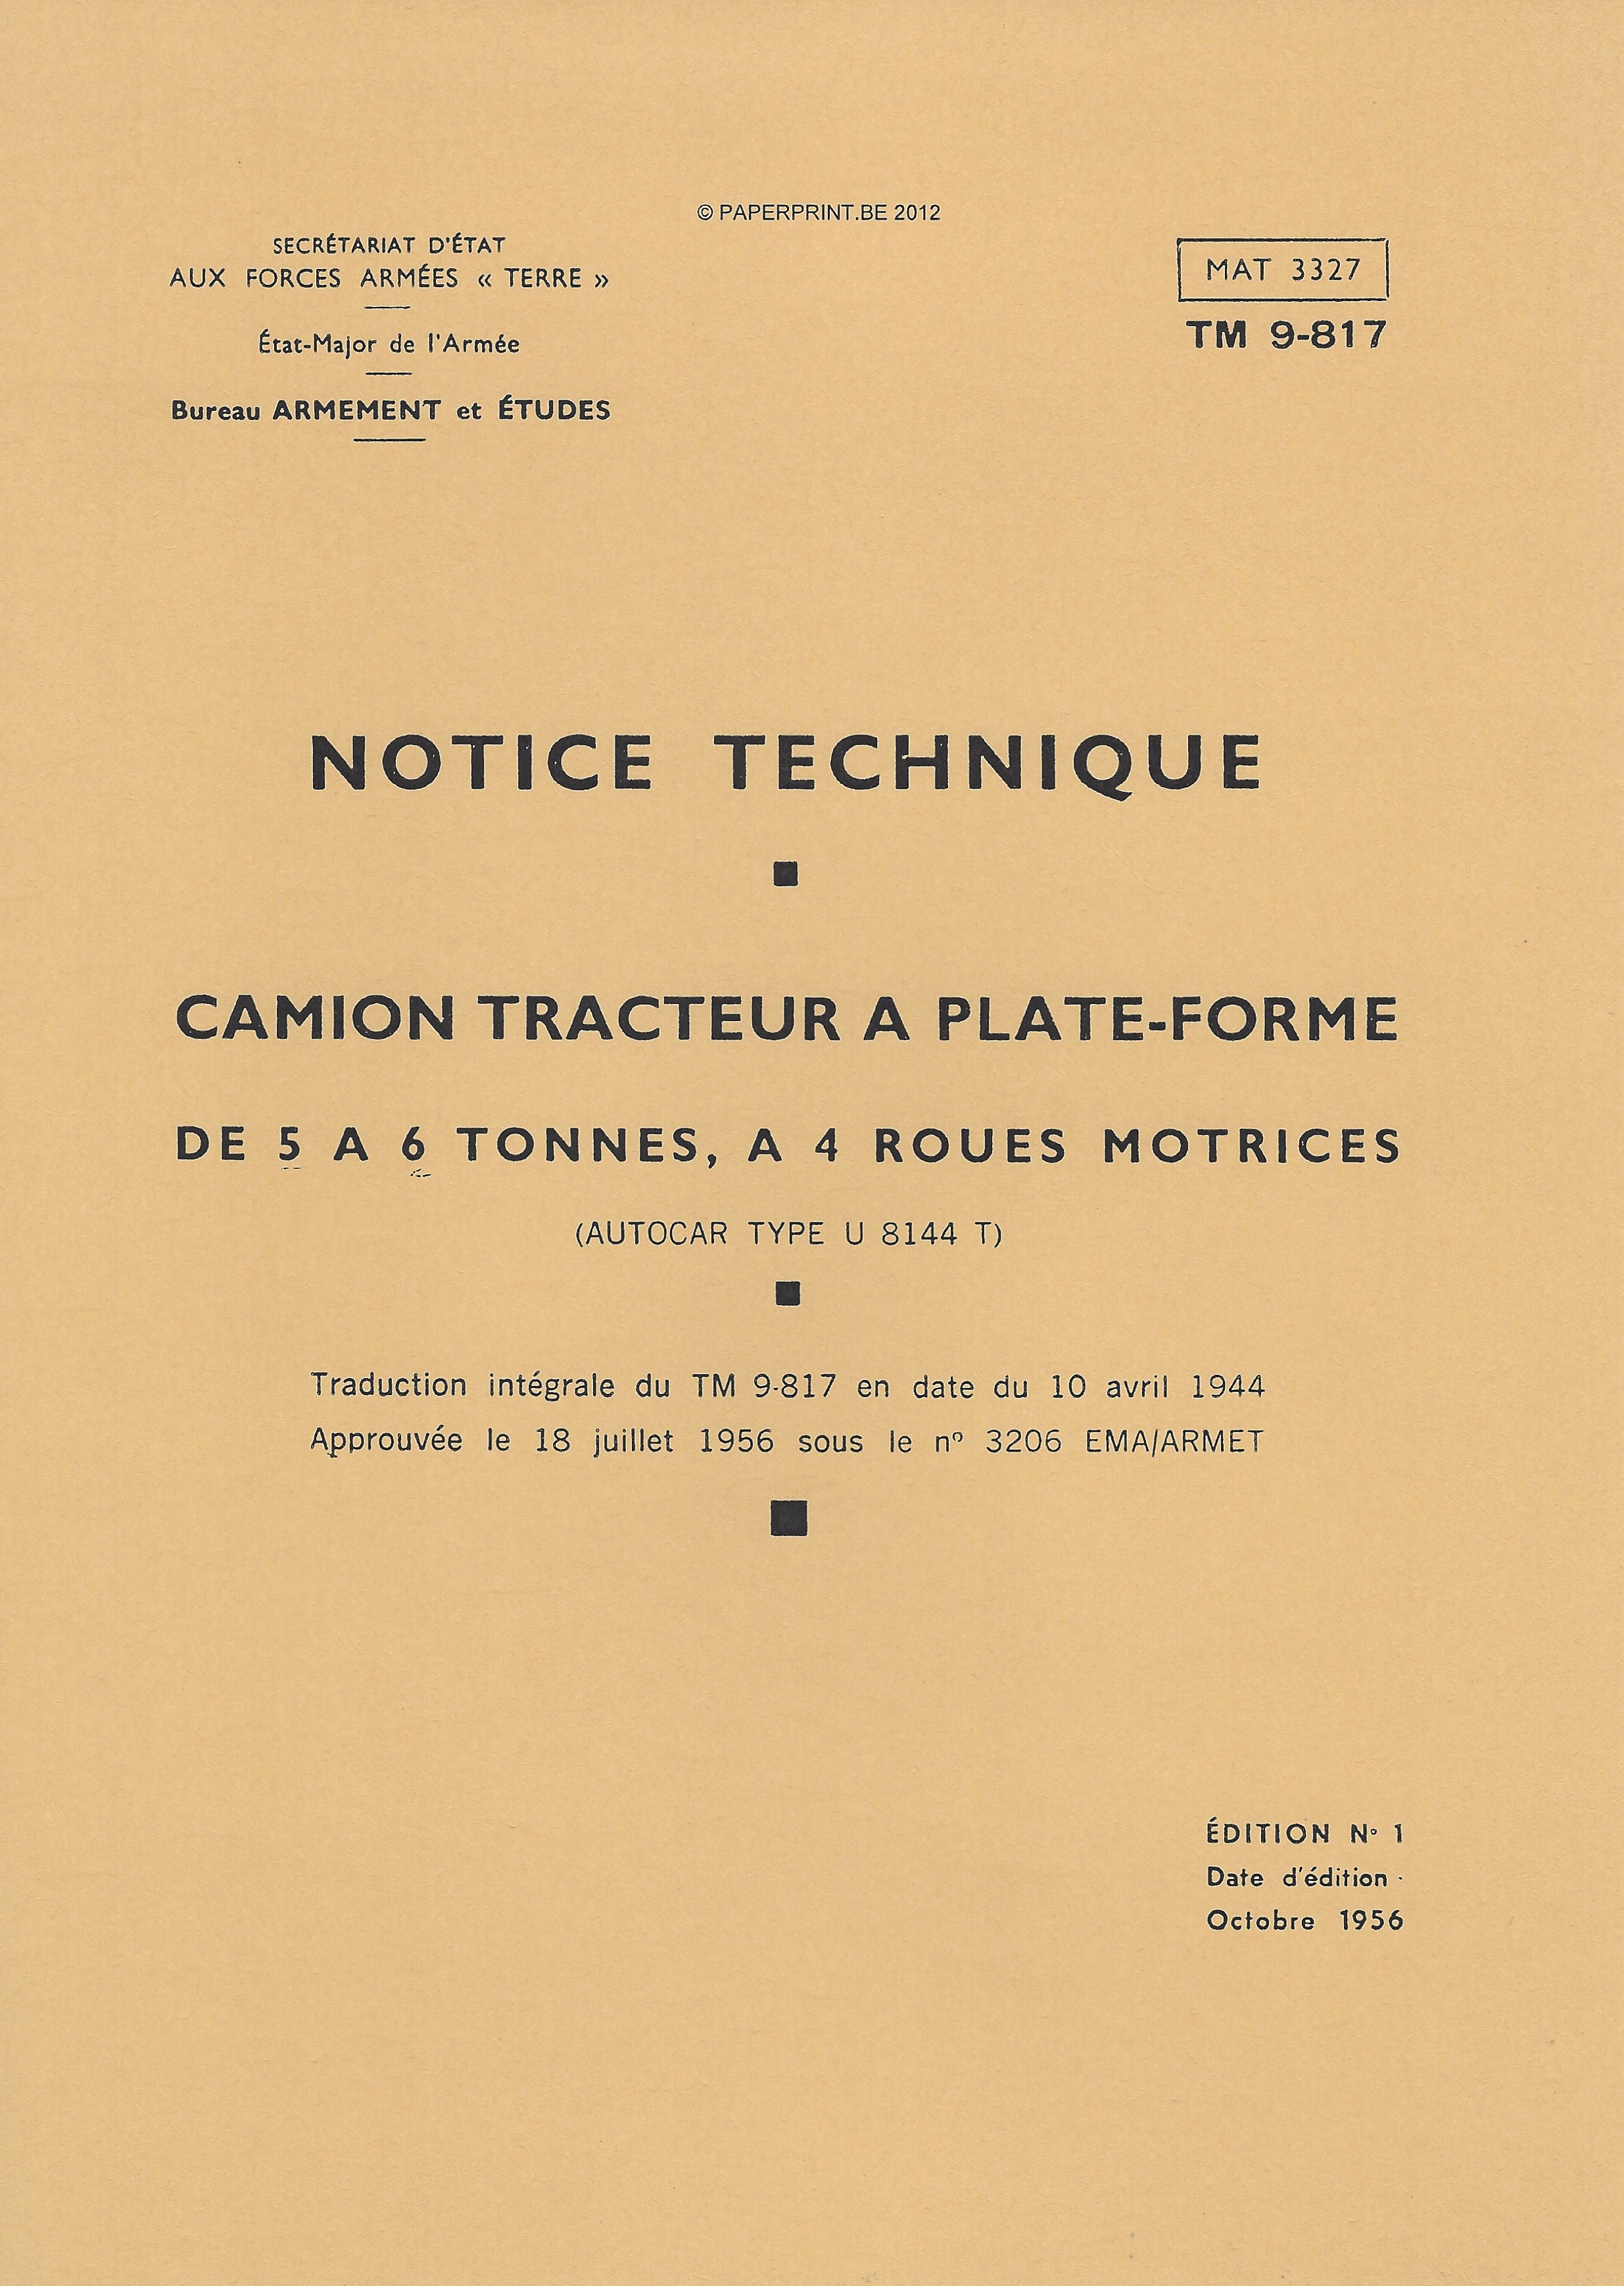 TM 9-817 FR CAMION TRACTEUR A PLATE-FORME DE 5 A 6 TONNES, A 4 ROUES MOTRICES (AUTOCAR TYPE U 8144 T)